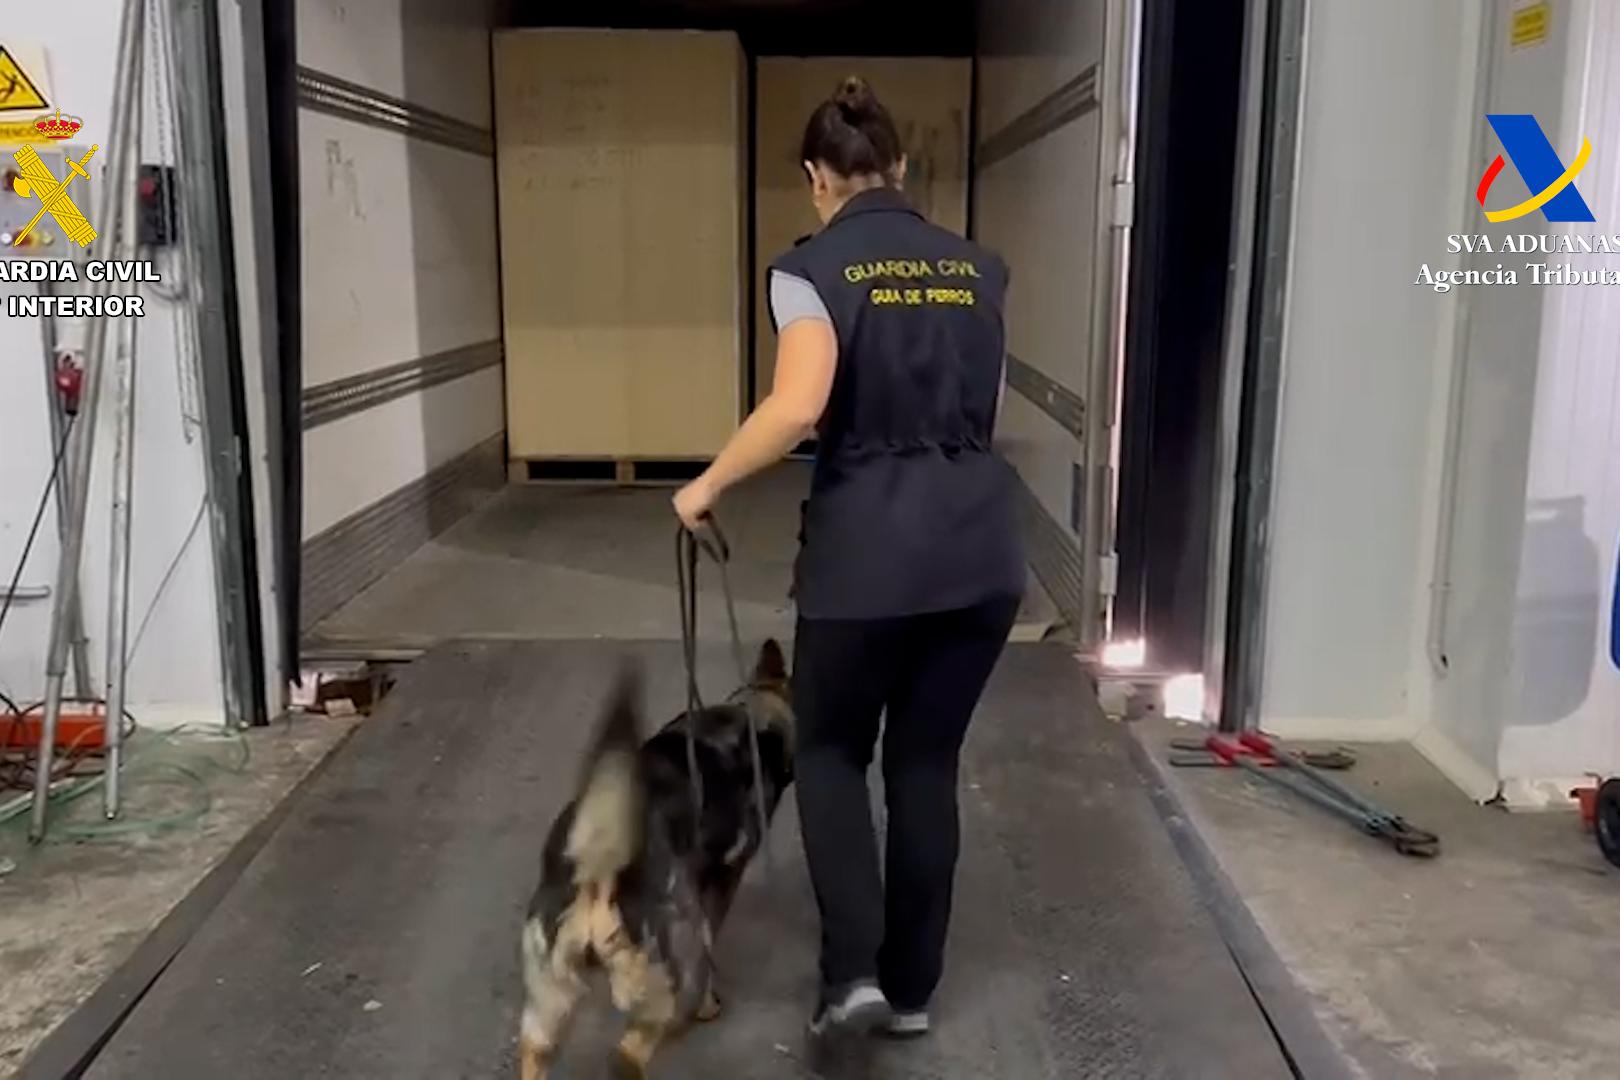 Agente de la Guardia civil con un perro para la detección de droga